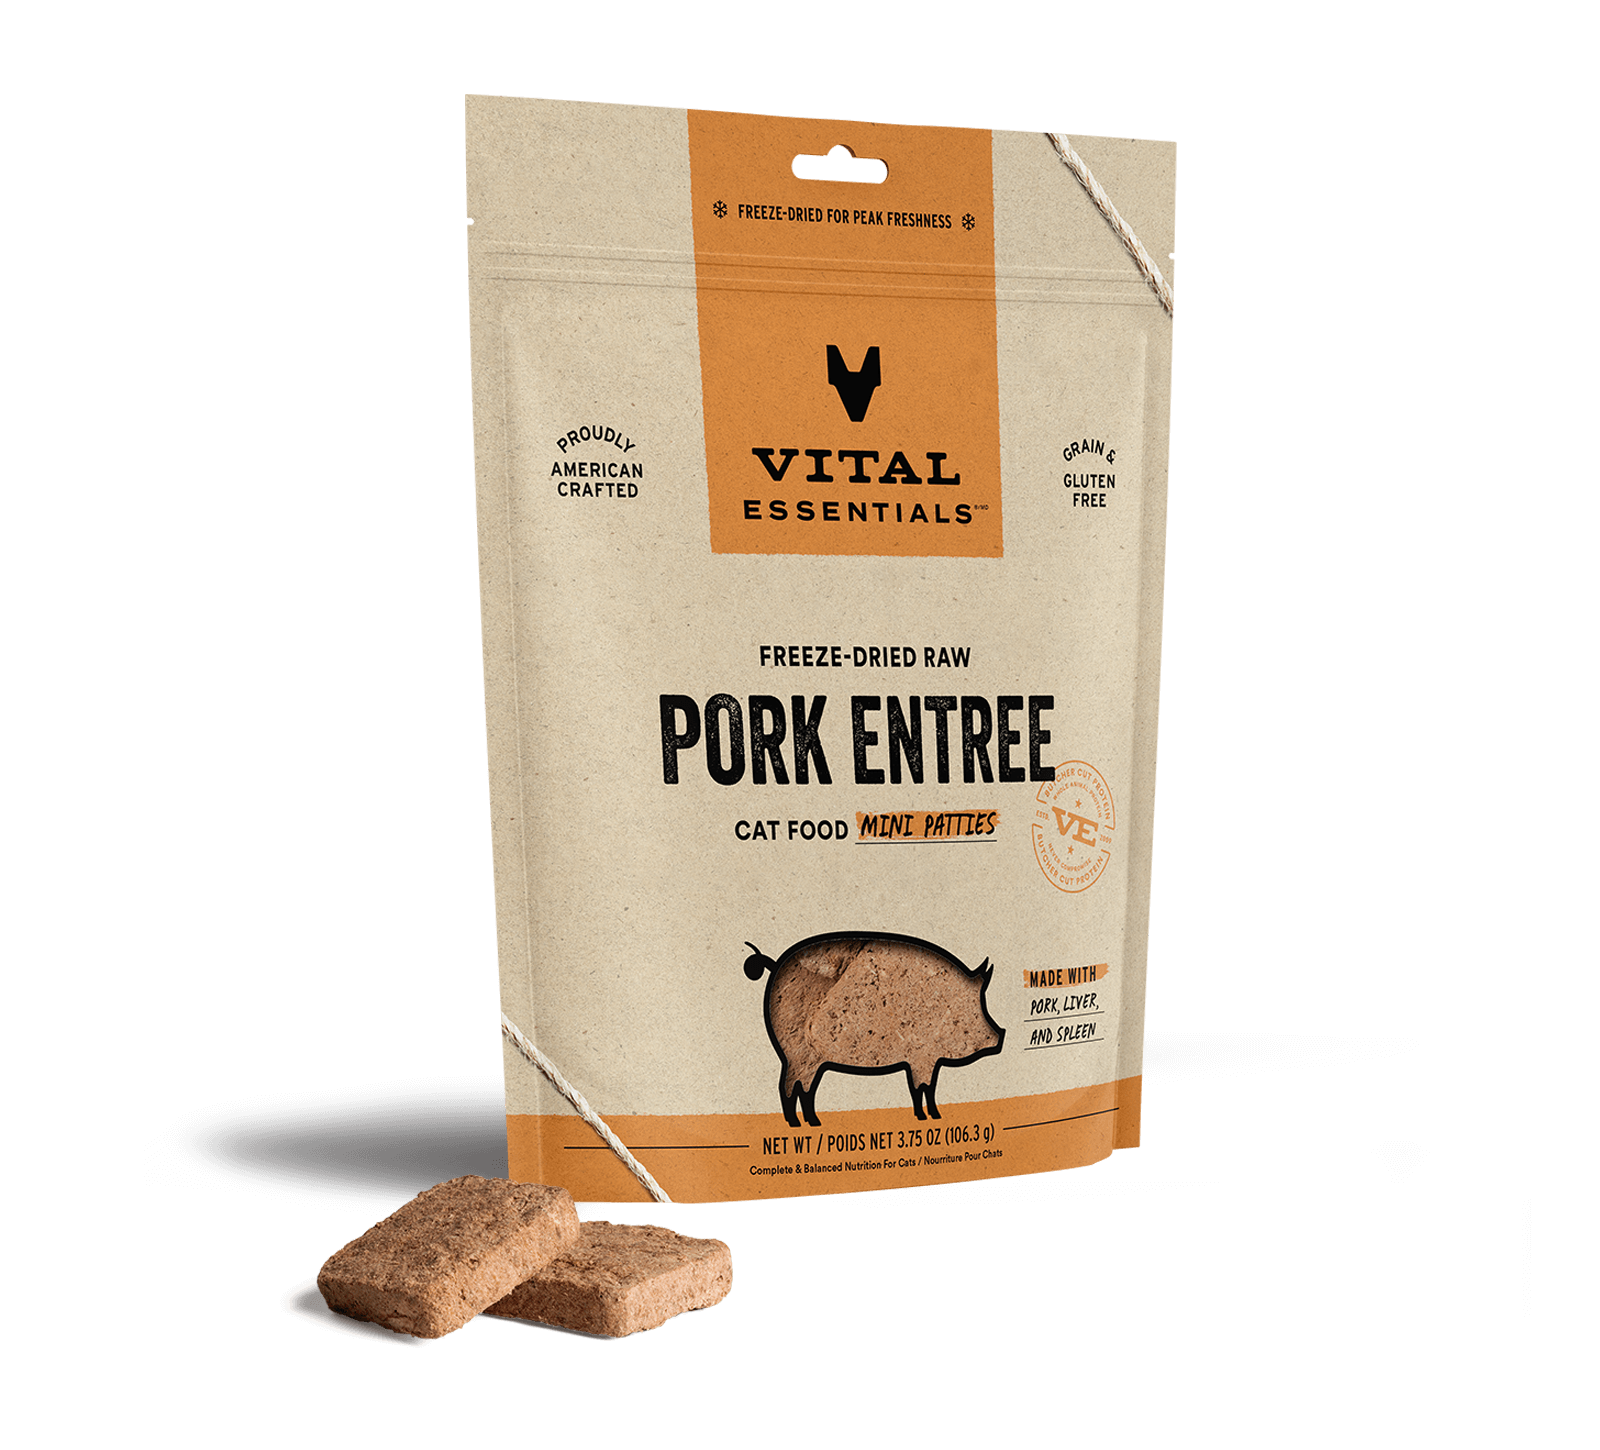 Vital Essentials Freeze-Dried Raw Pork Entree Cat Food Mini Patties, 3.75 oz - Healing/First Aid